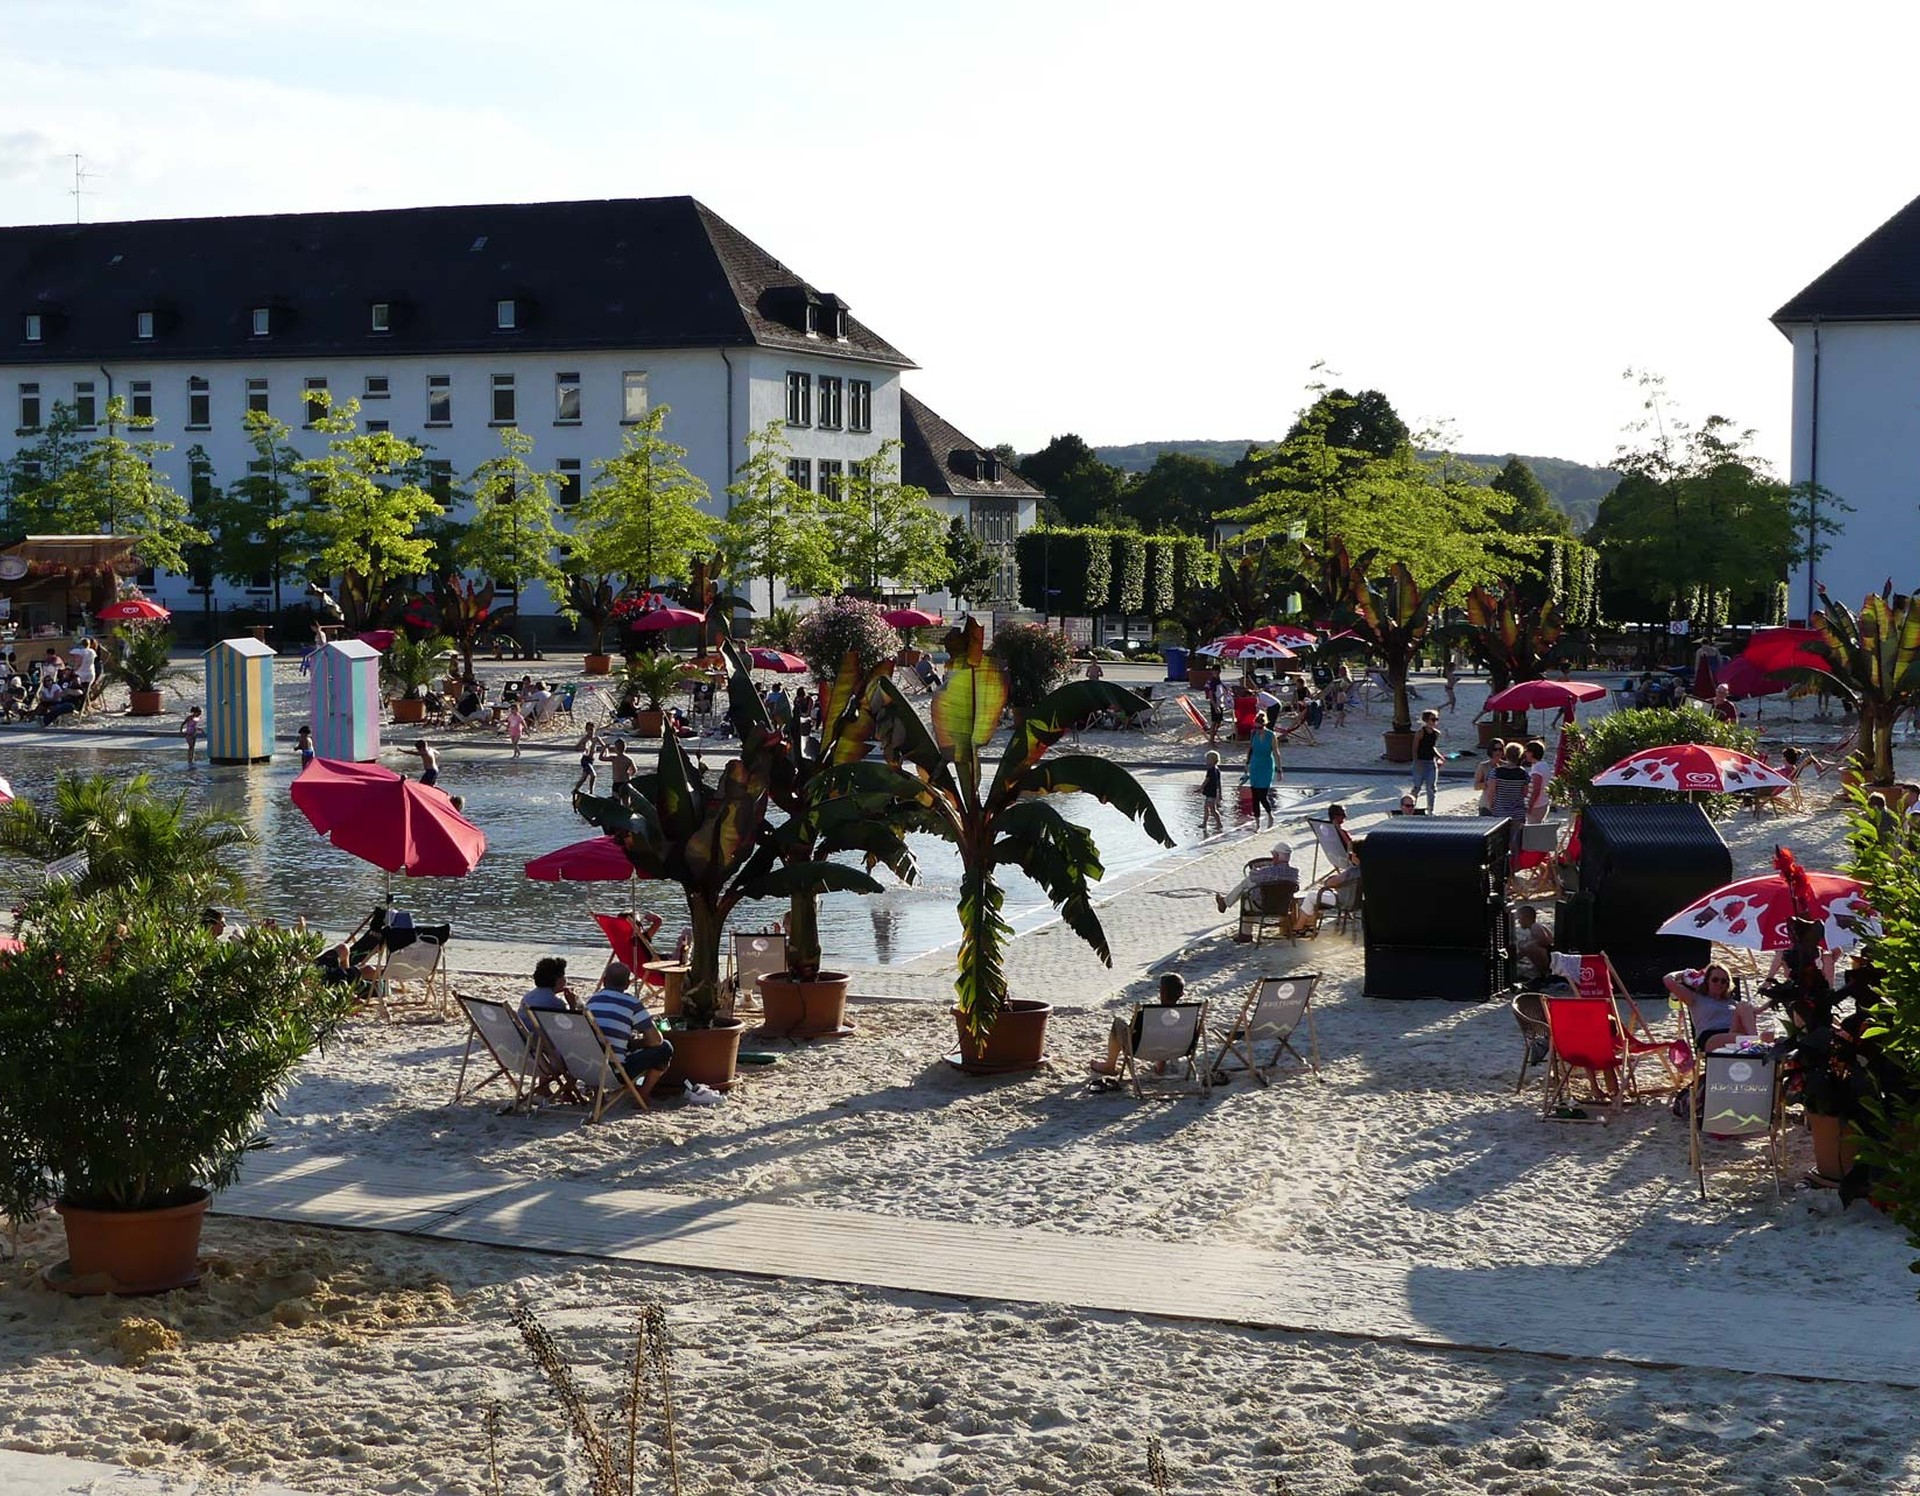 Der Himmelsspiegel im Sauerlandpark Hemer lädt als Wasserspielplatz zum Planschen ein. Drum herum befinden sich zahlreiche Strandsessel zum Entspannen.